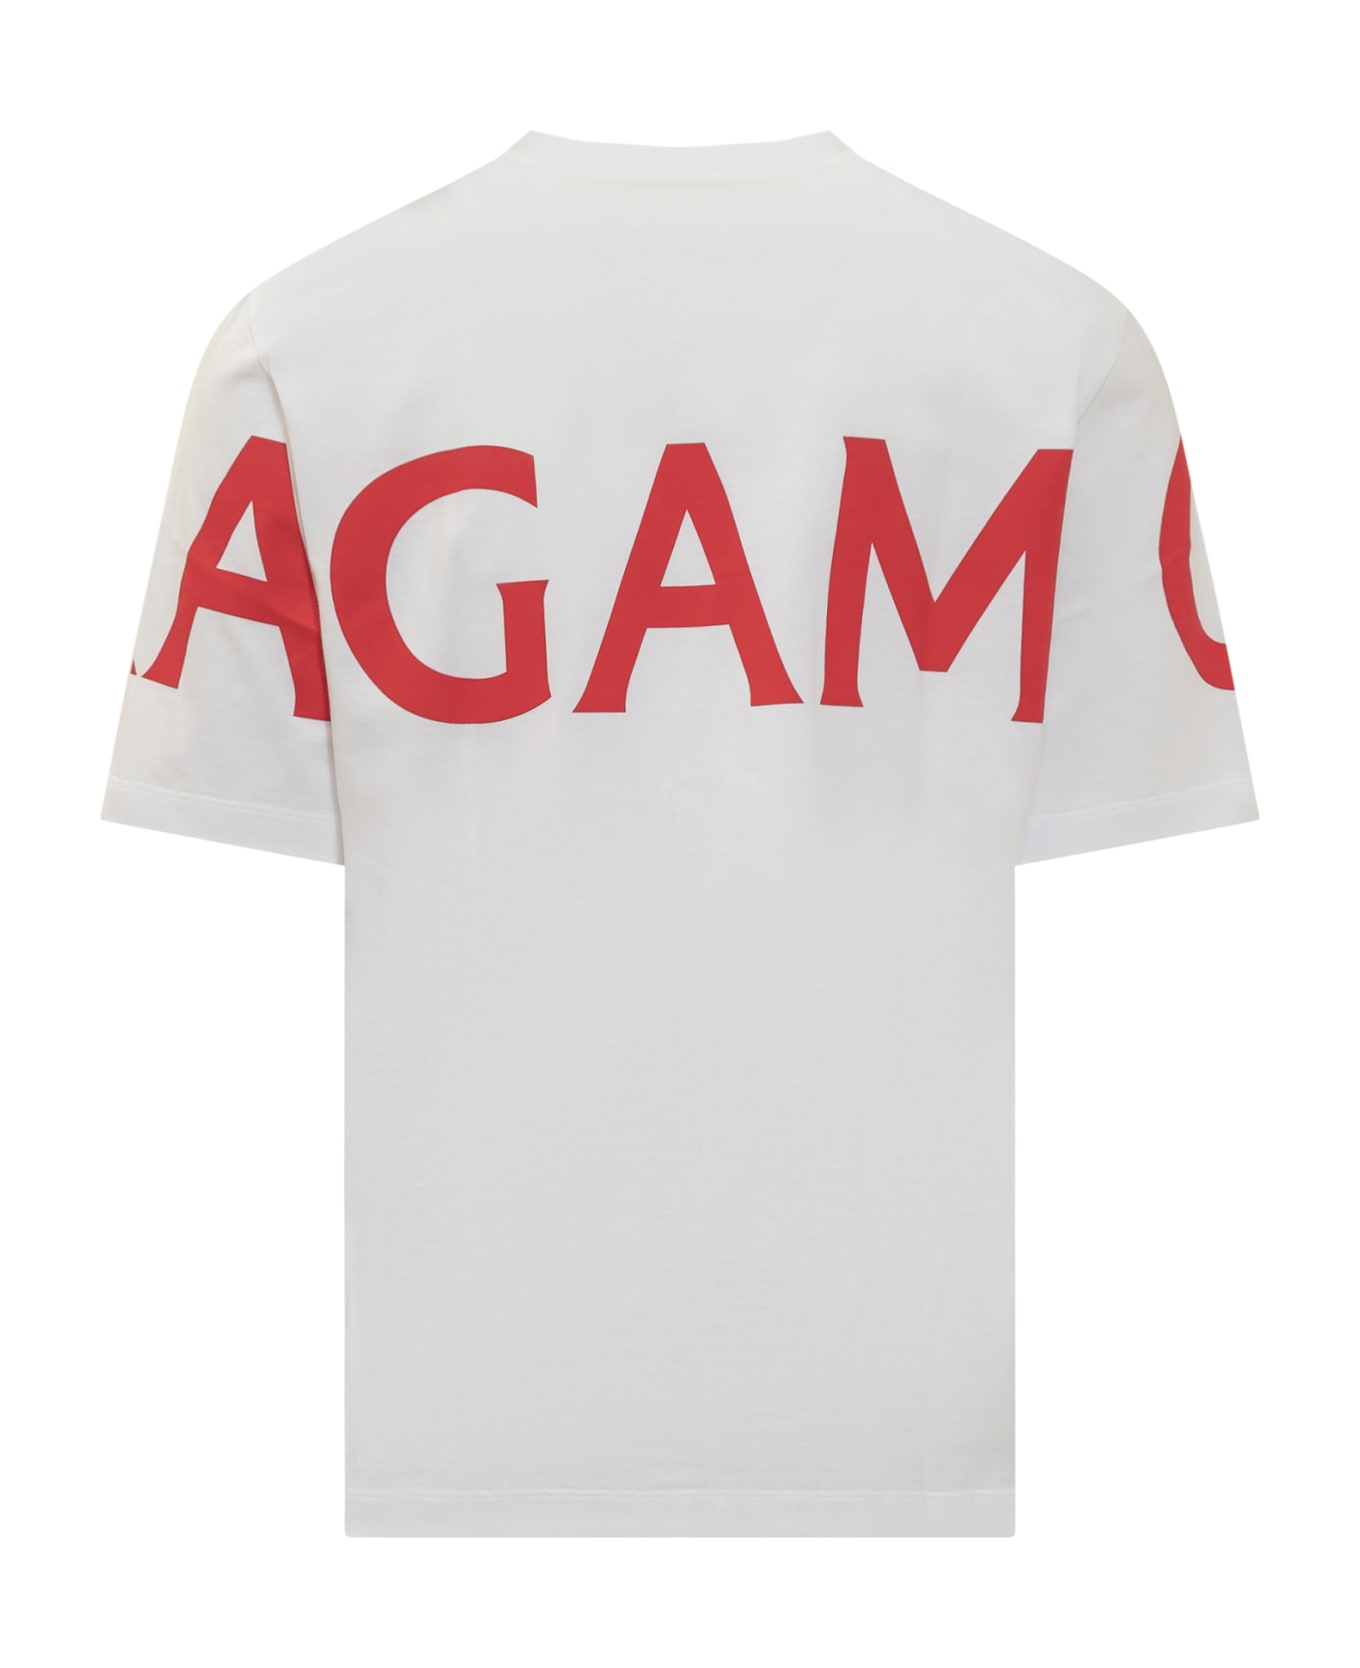 Ferragamo Manifesto T-shirt - WHITE/NEW RED シャツ